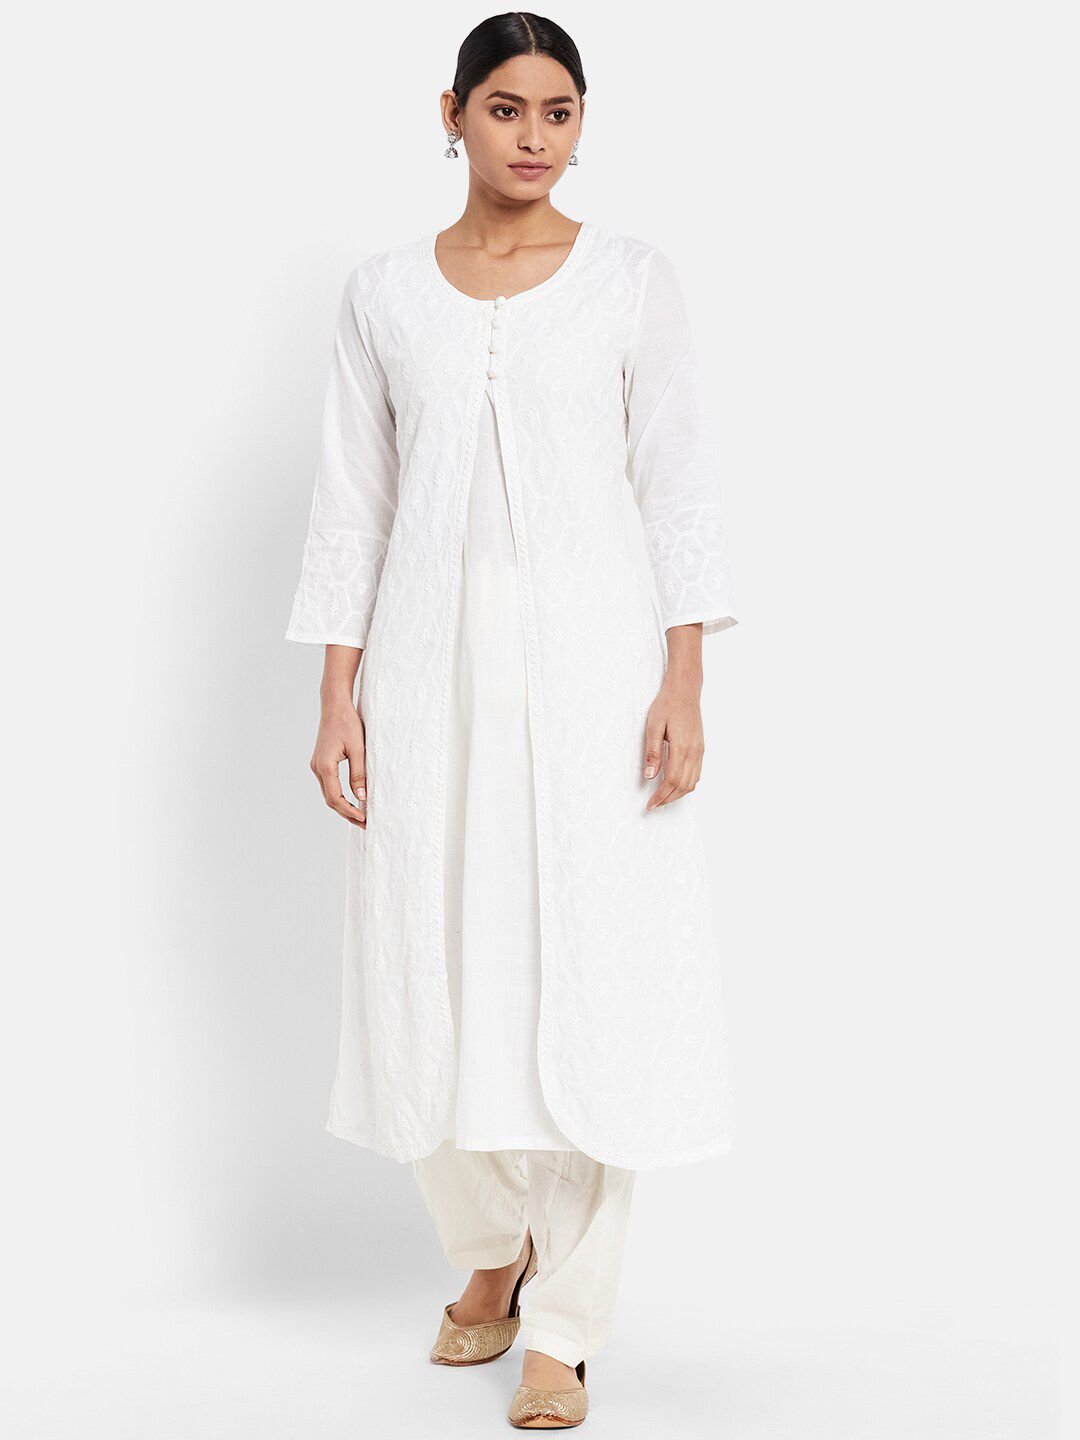 Fabindia Women Off White Thread Work Cotton Kurta With Shrug Price in India